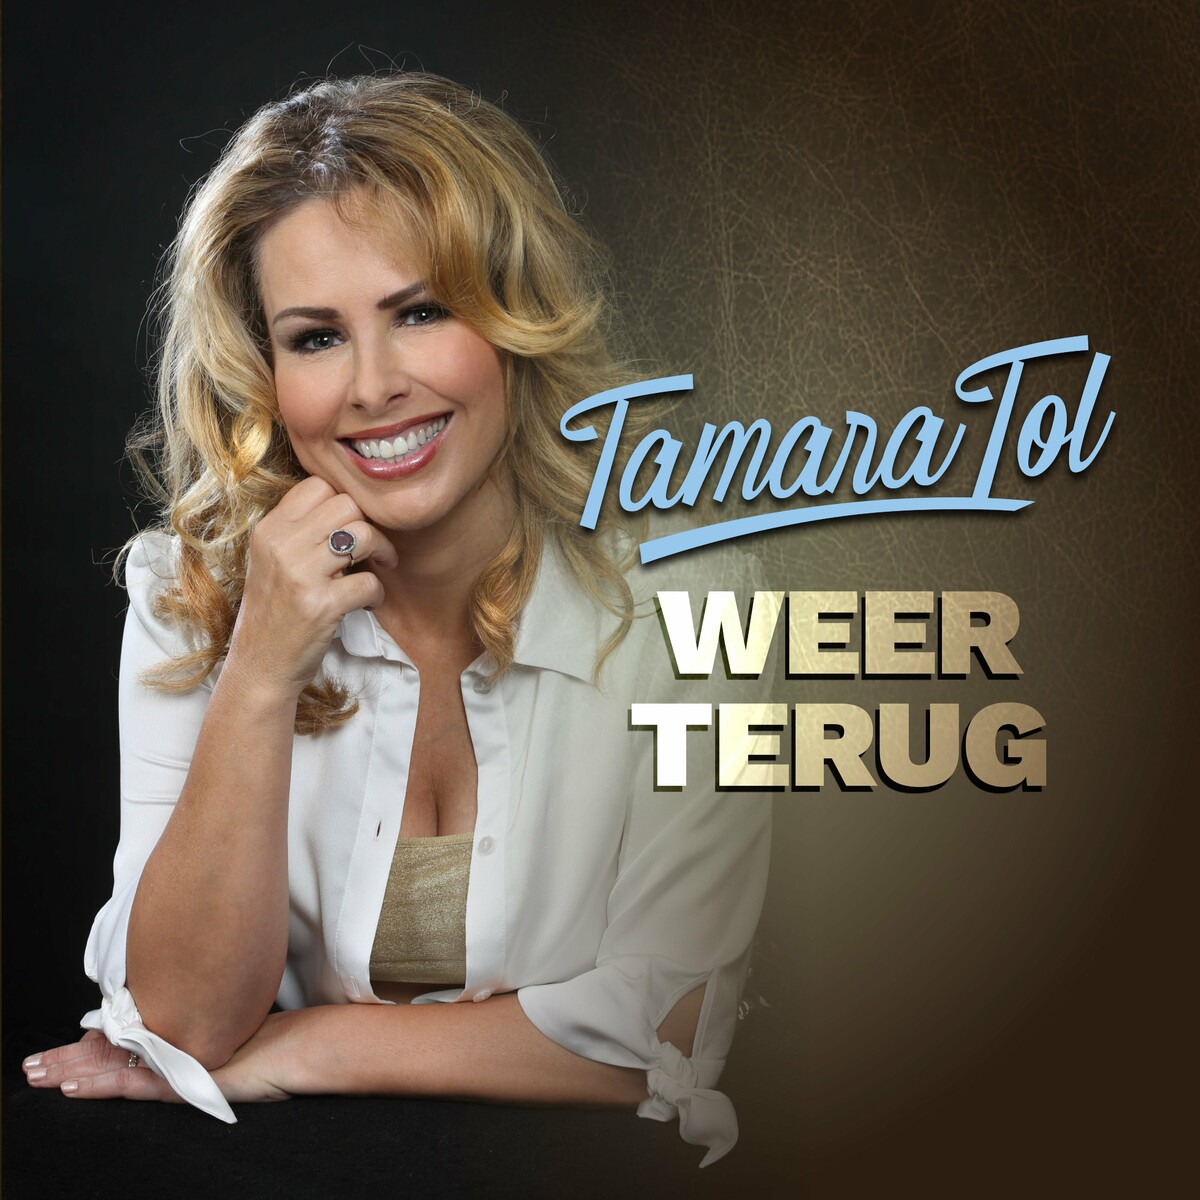 Tamara Tol - Weer Terug